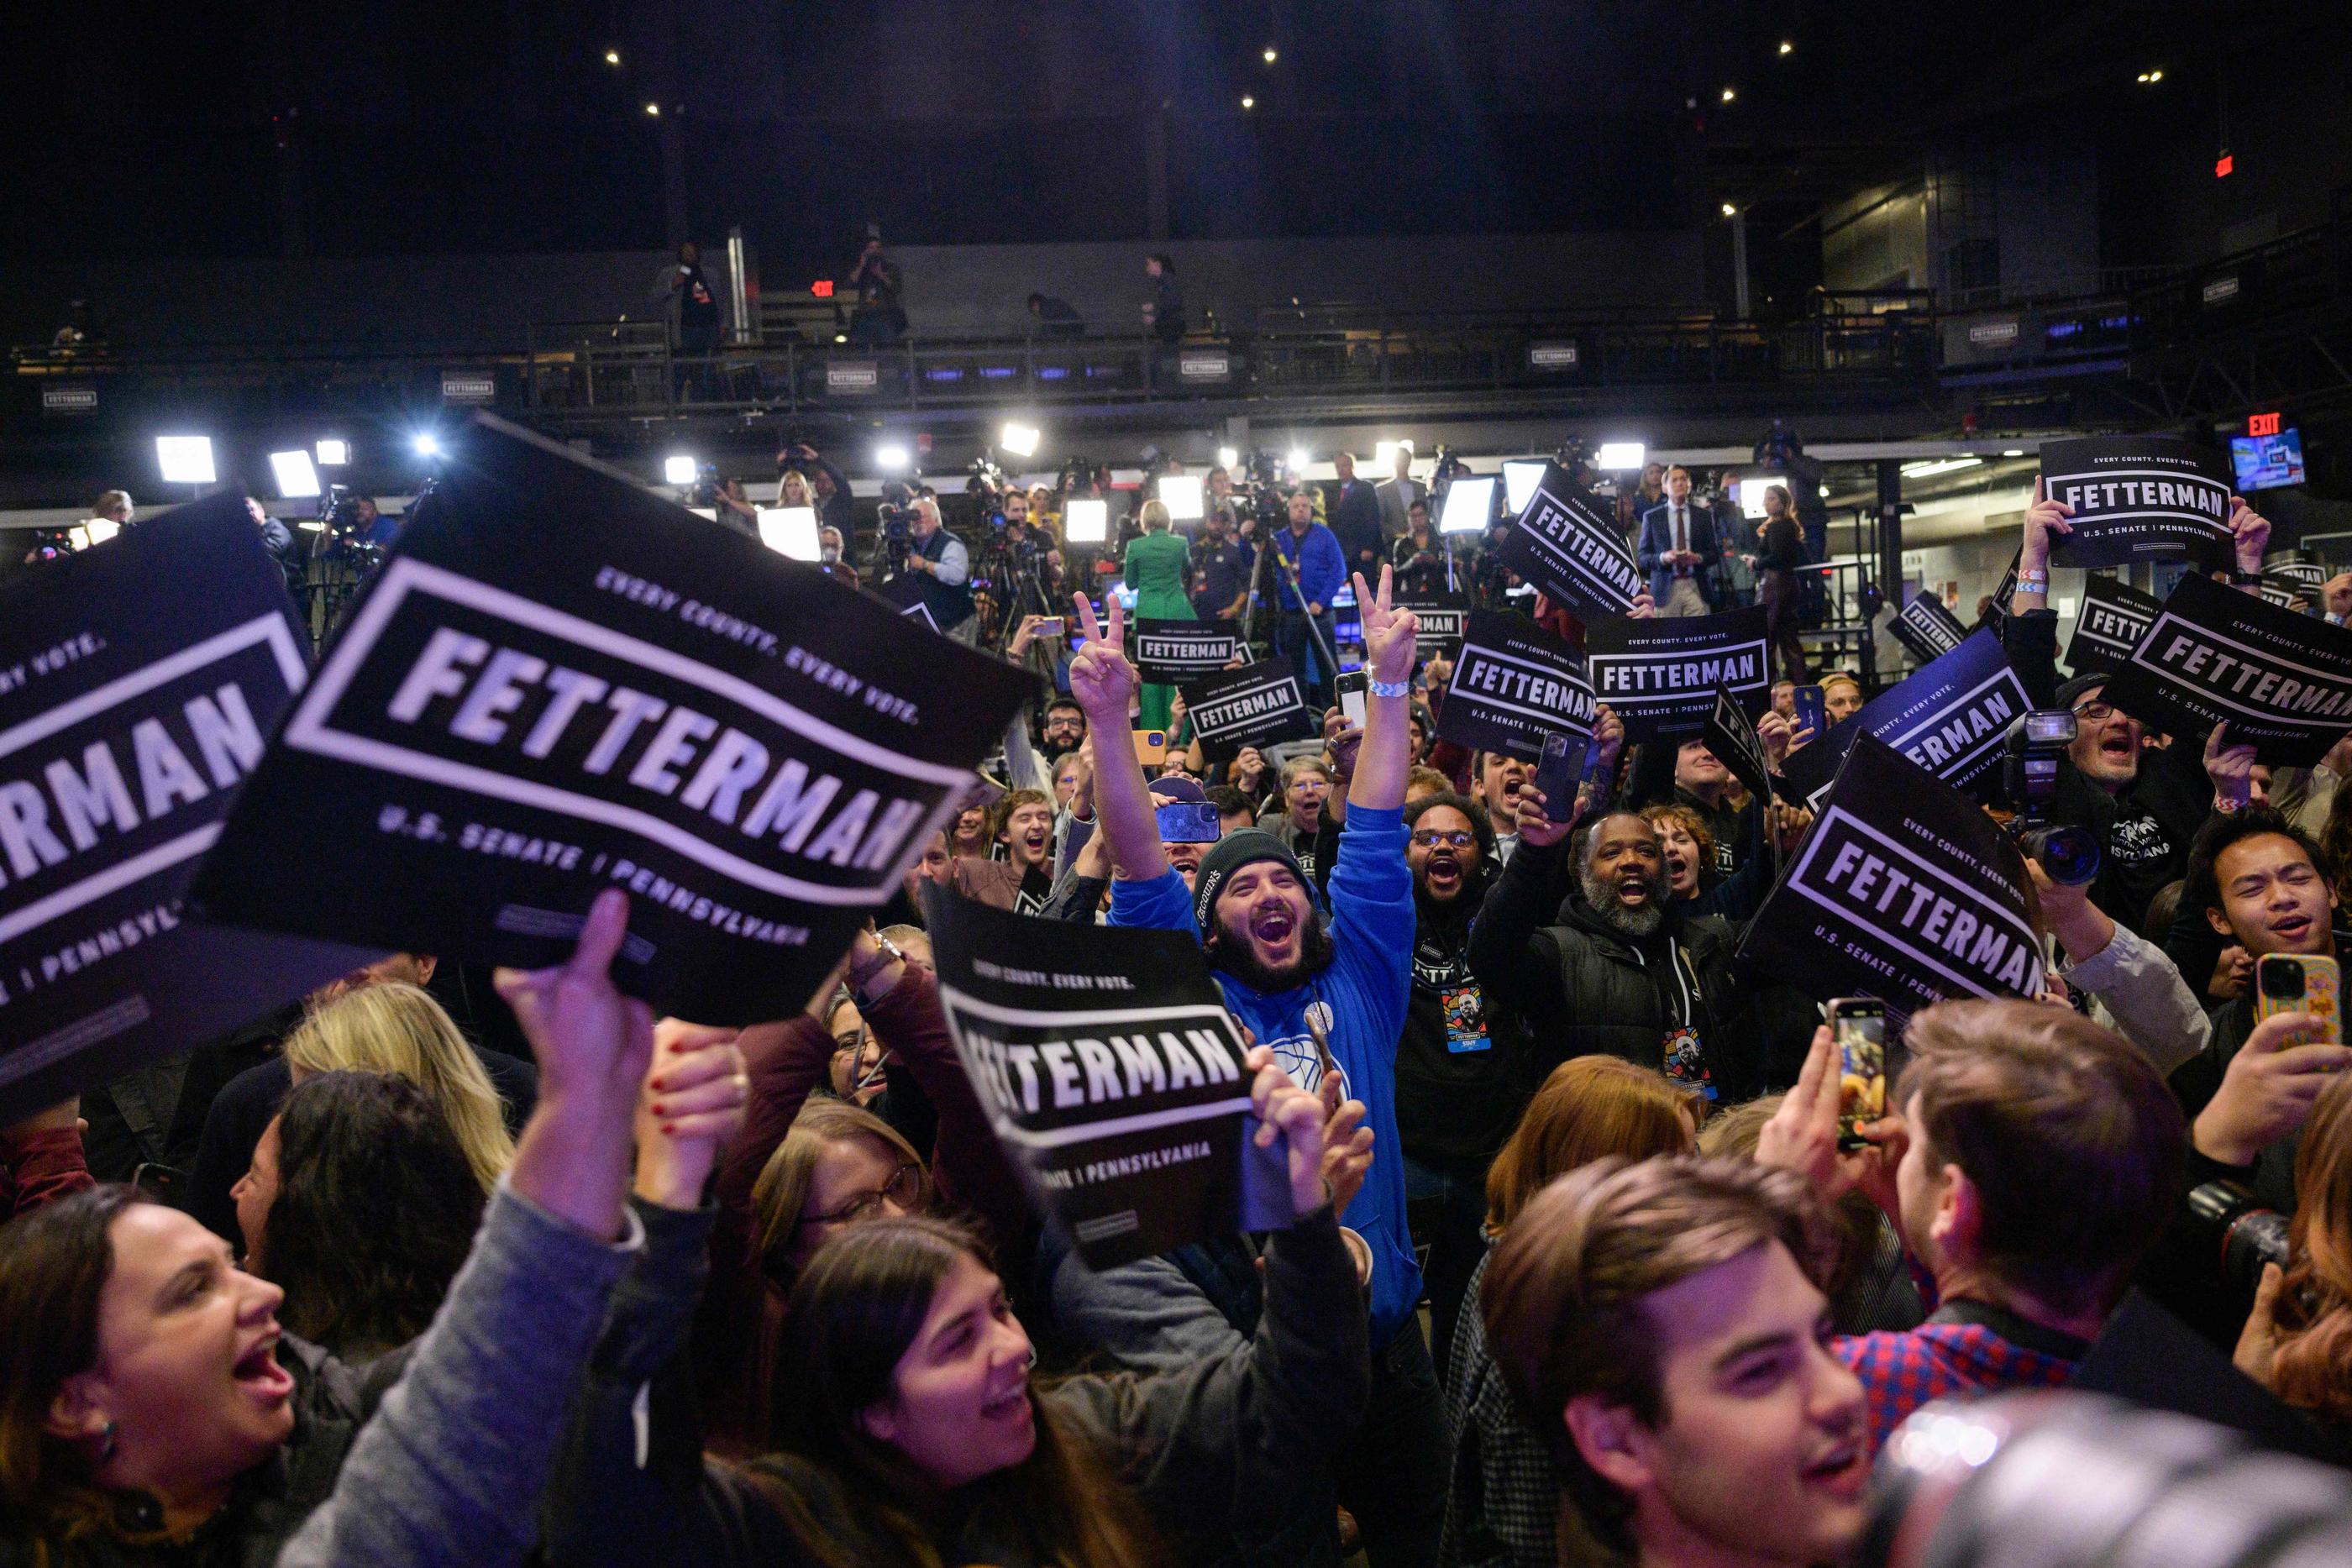 En Pennsylvanie, les supporters du démocrate John Fetterman fêtent sa victoire, remportée de justesse. AFP/ANGELA WEISS